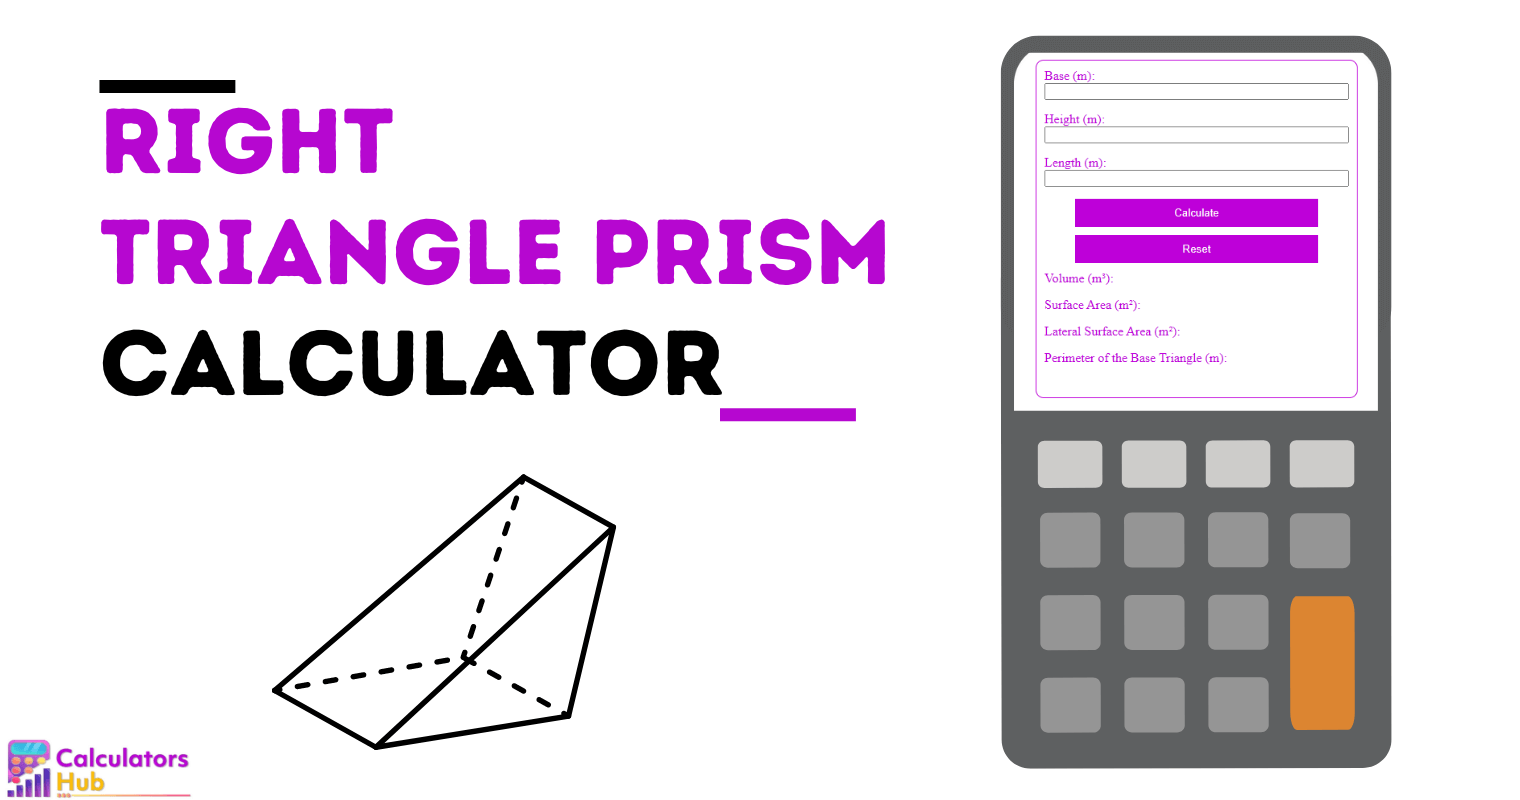 Right Triangle Prism Calculator